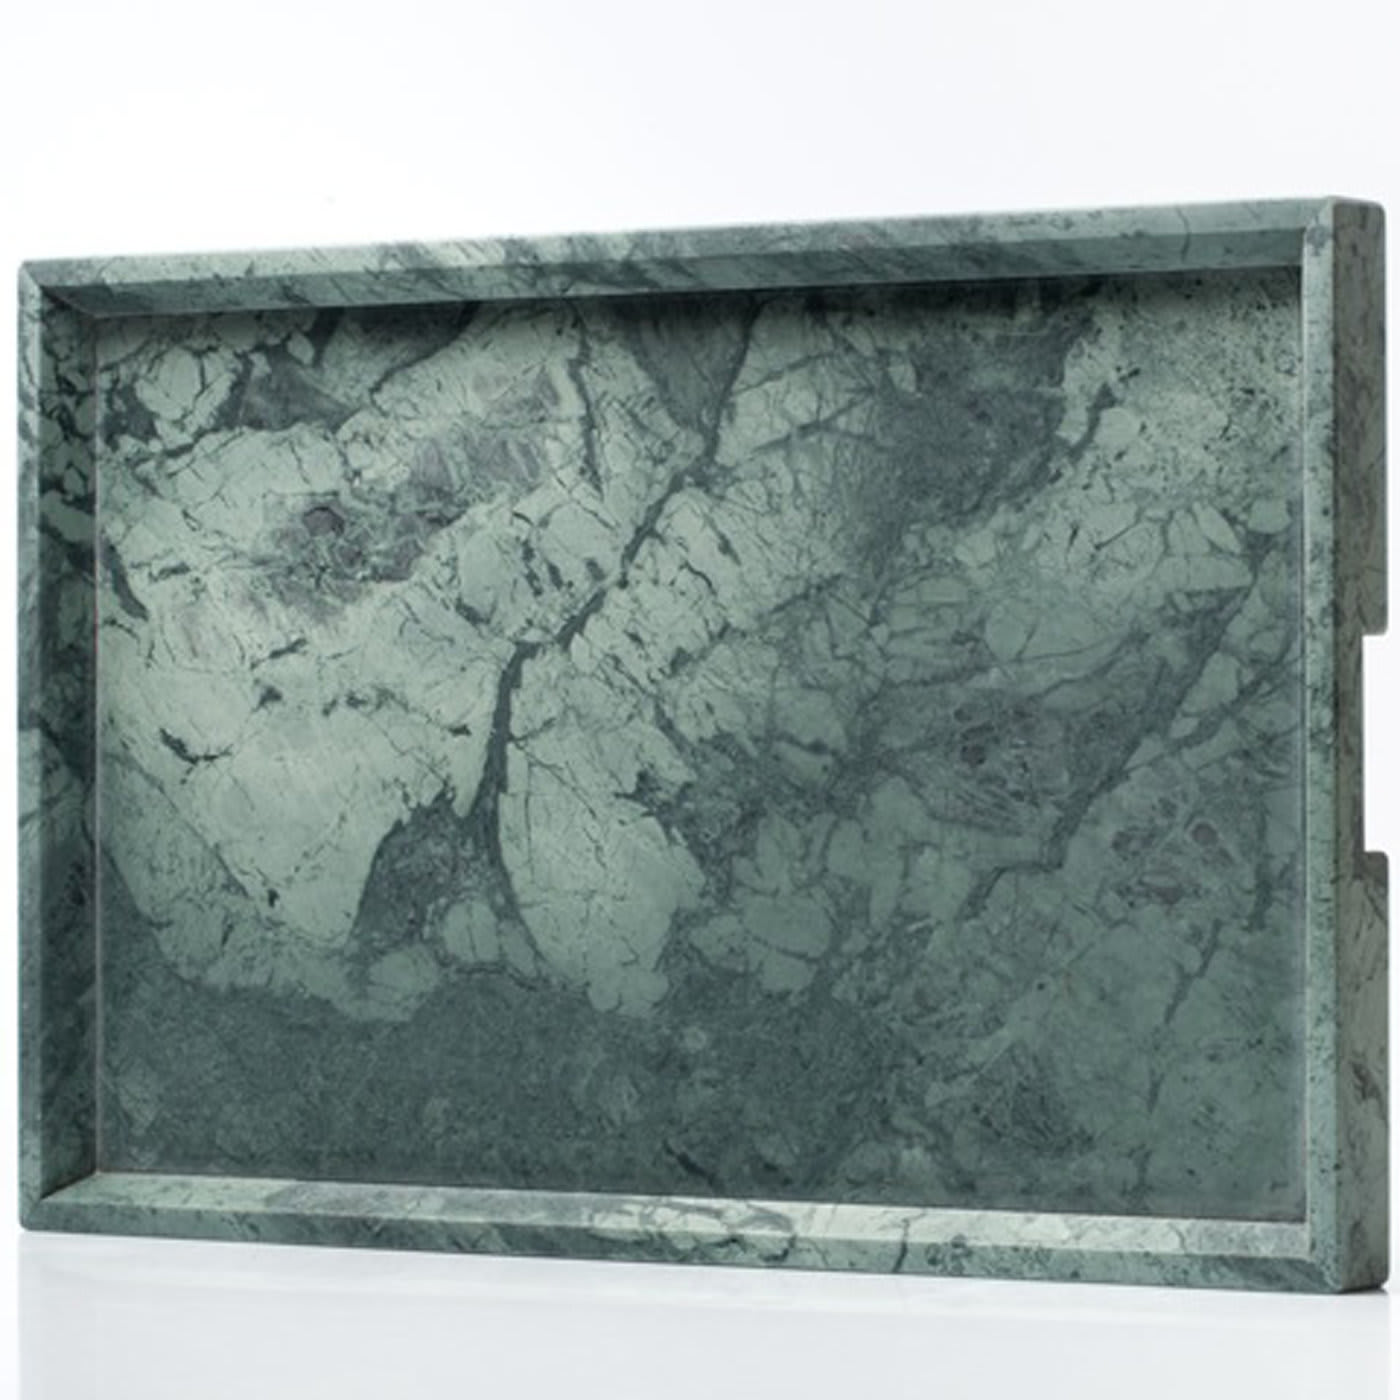 Convivio Maxi Solid Tray in Green Guatemala Marble - Espidesign by Paola Speranza